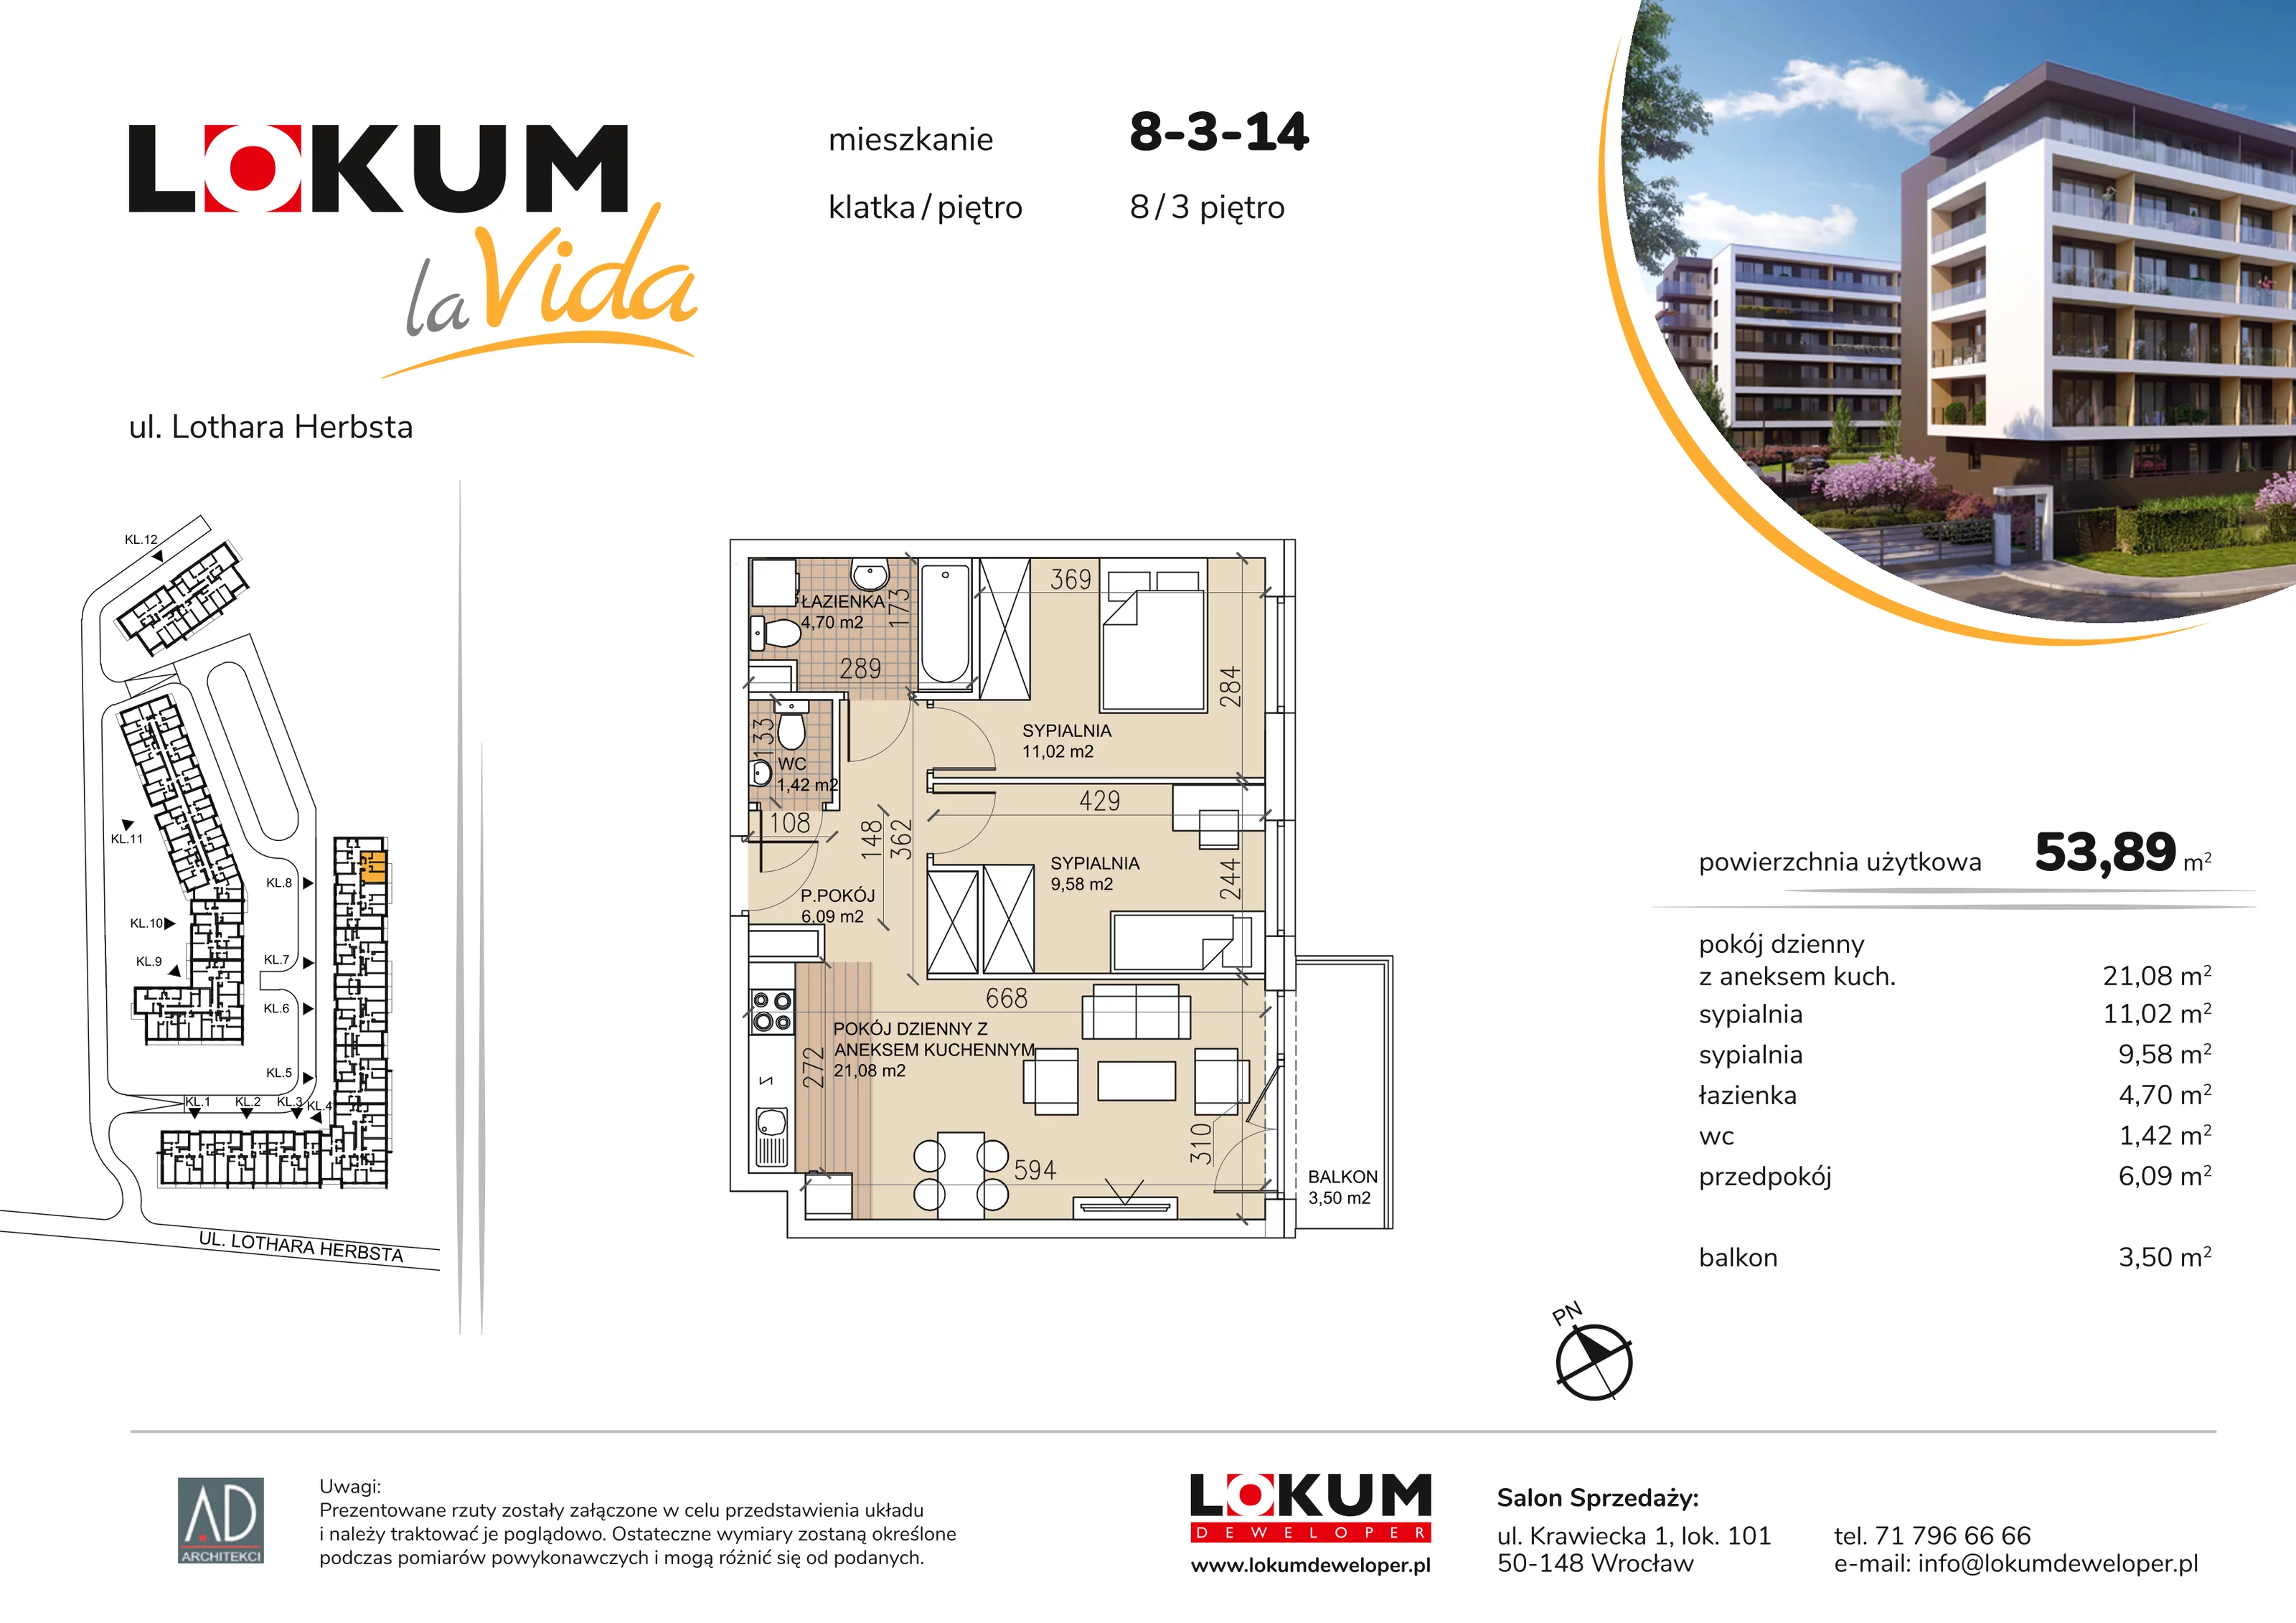 Mieszkanie 53,89 m², piętro 3, oferta nr 8-3-14, Lokum la Vida, Wrocław, Sołtysowice, ul. Lothara Herbsta